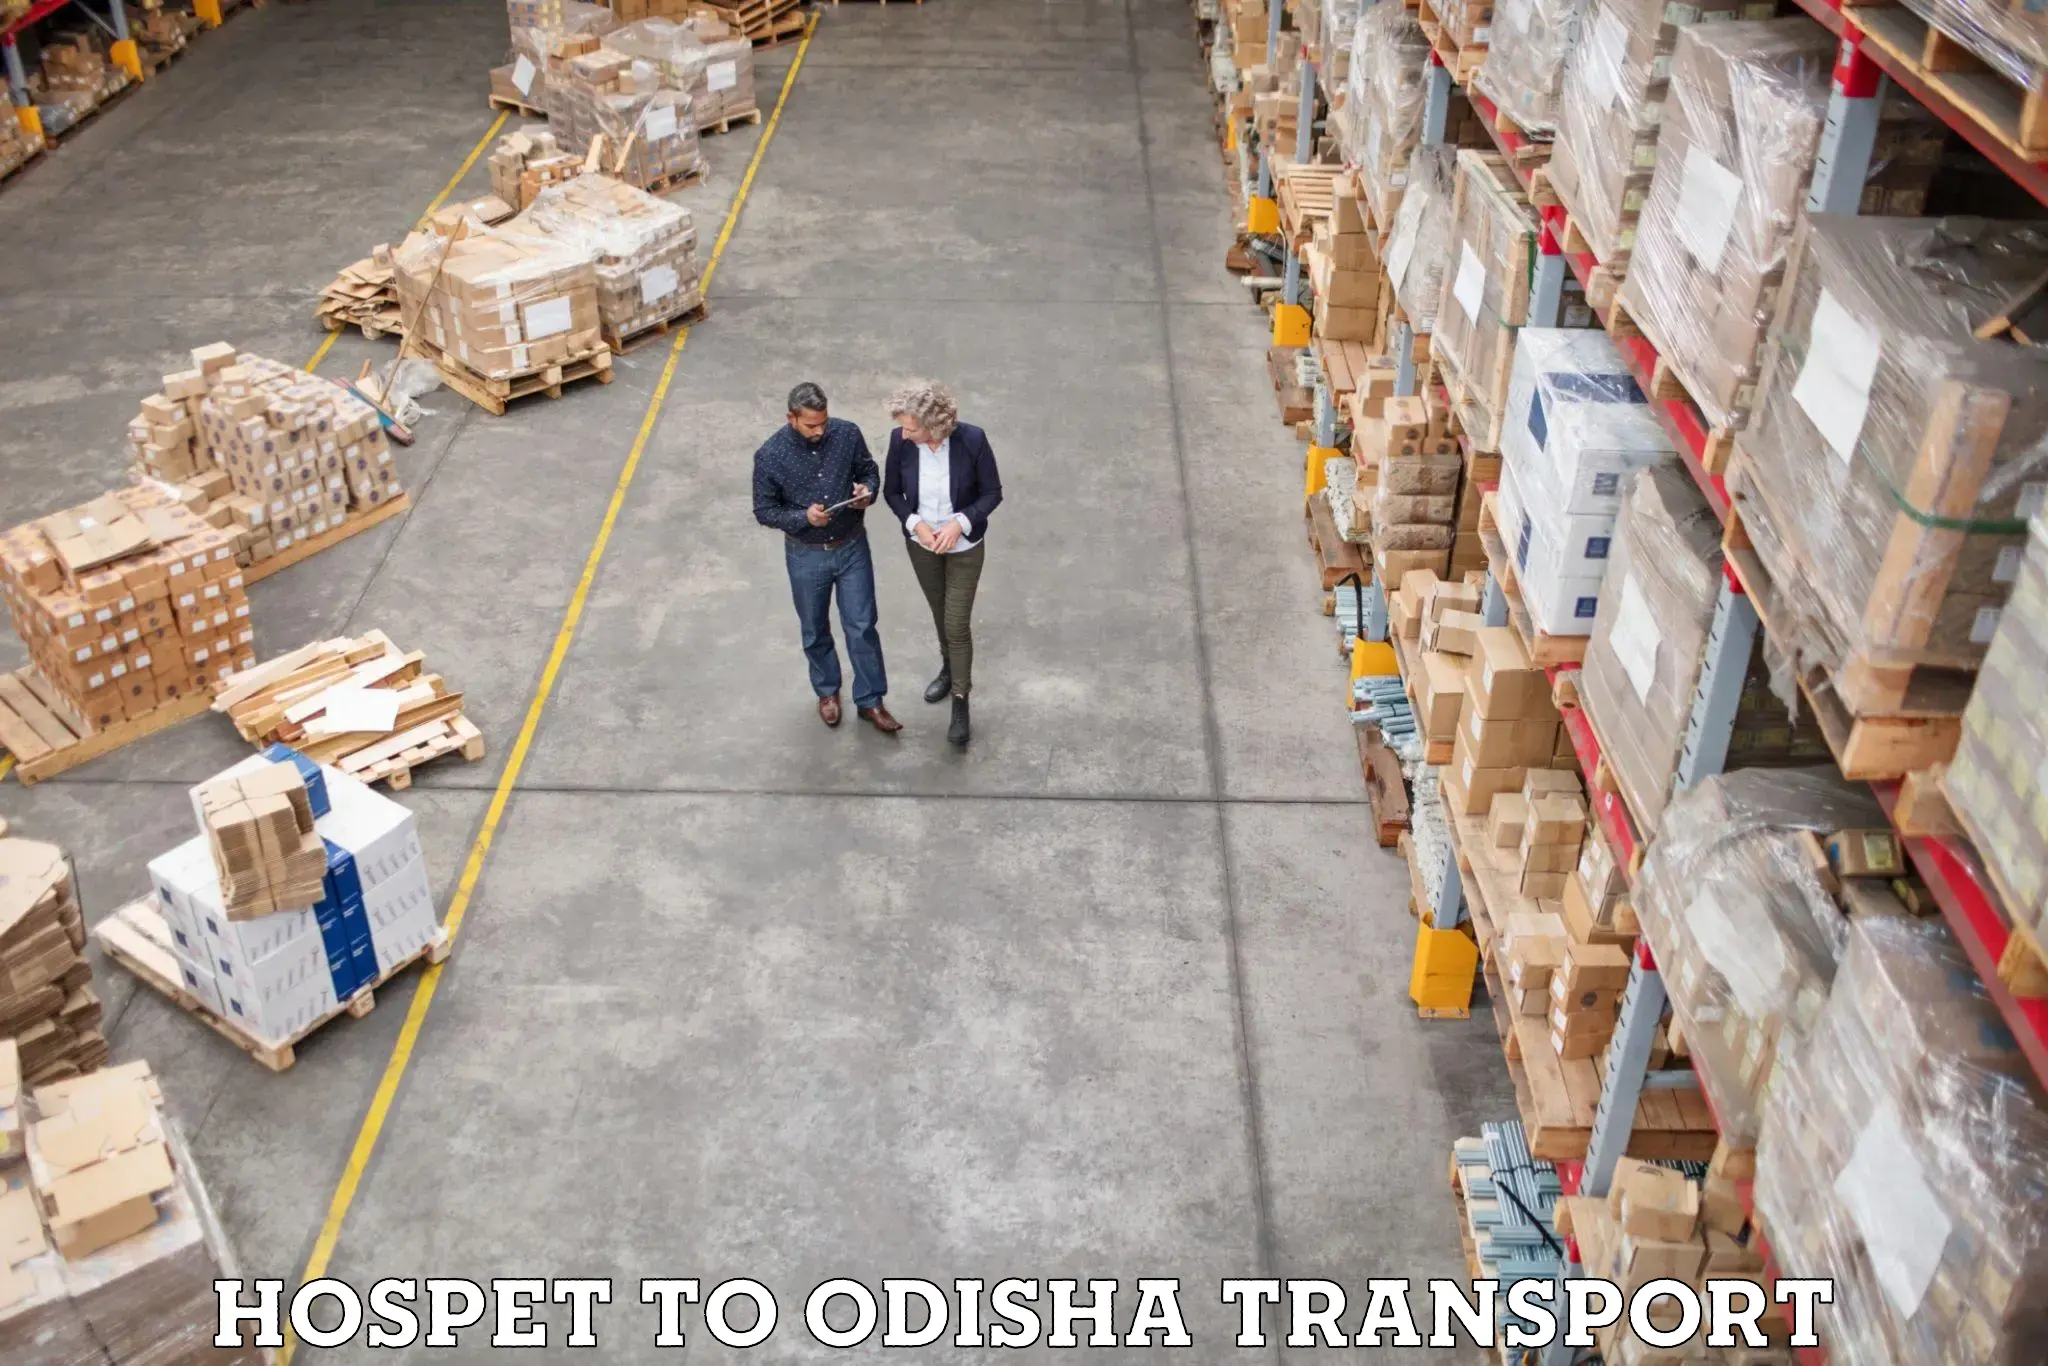 Shipping partner Hospet to Chandbali